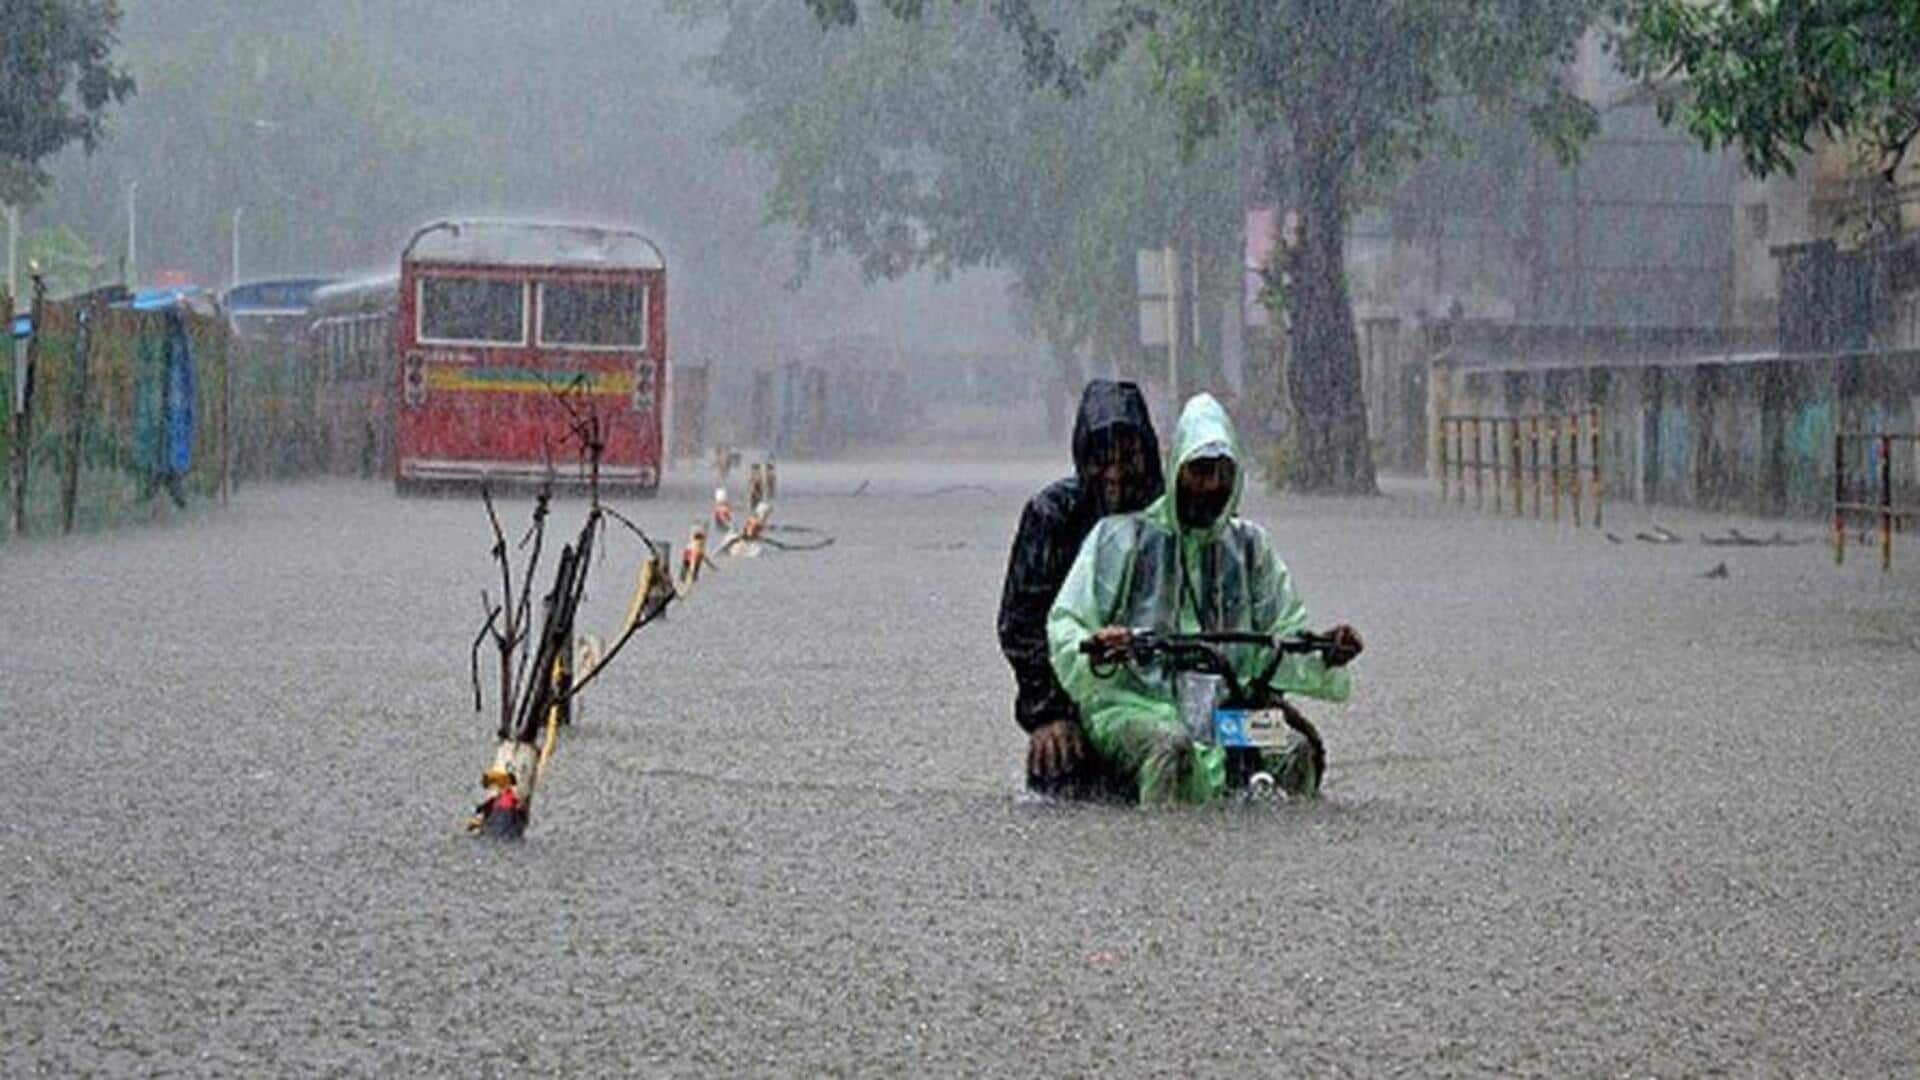 हिमाचल प्रदेश, गुजरात और महाराष्ट्र में भारी बारिश की चेतावनी, मौसम विभाग ने जारी किया अलर्ट